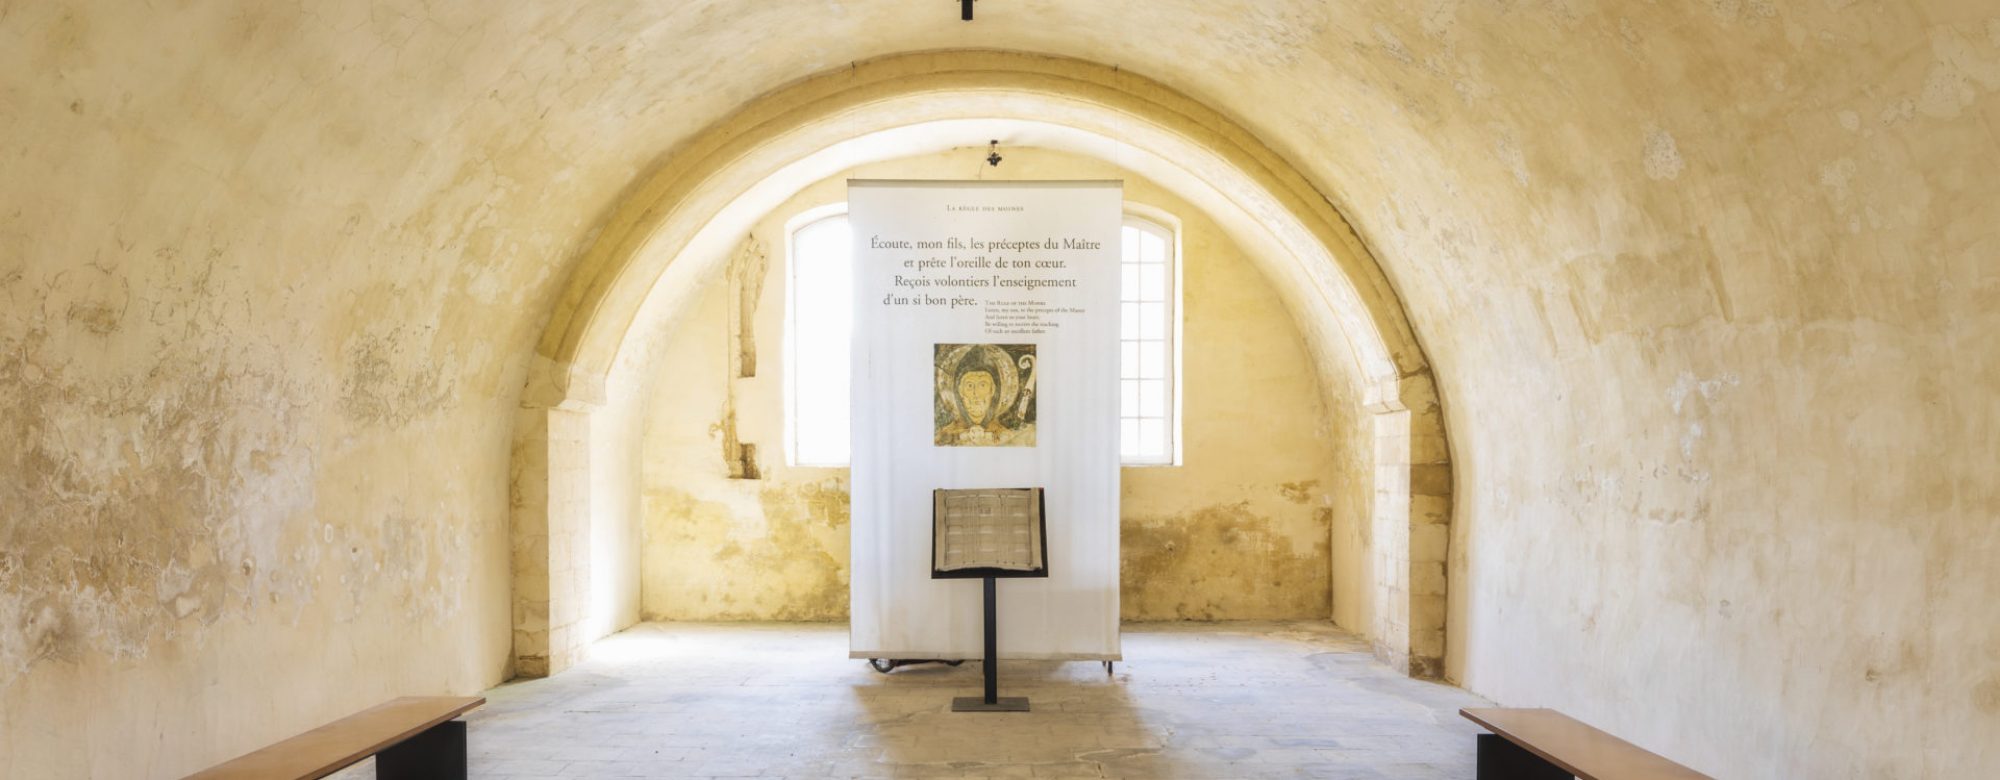 Intérieur de l'abbaye de Montivilliers